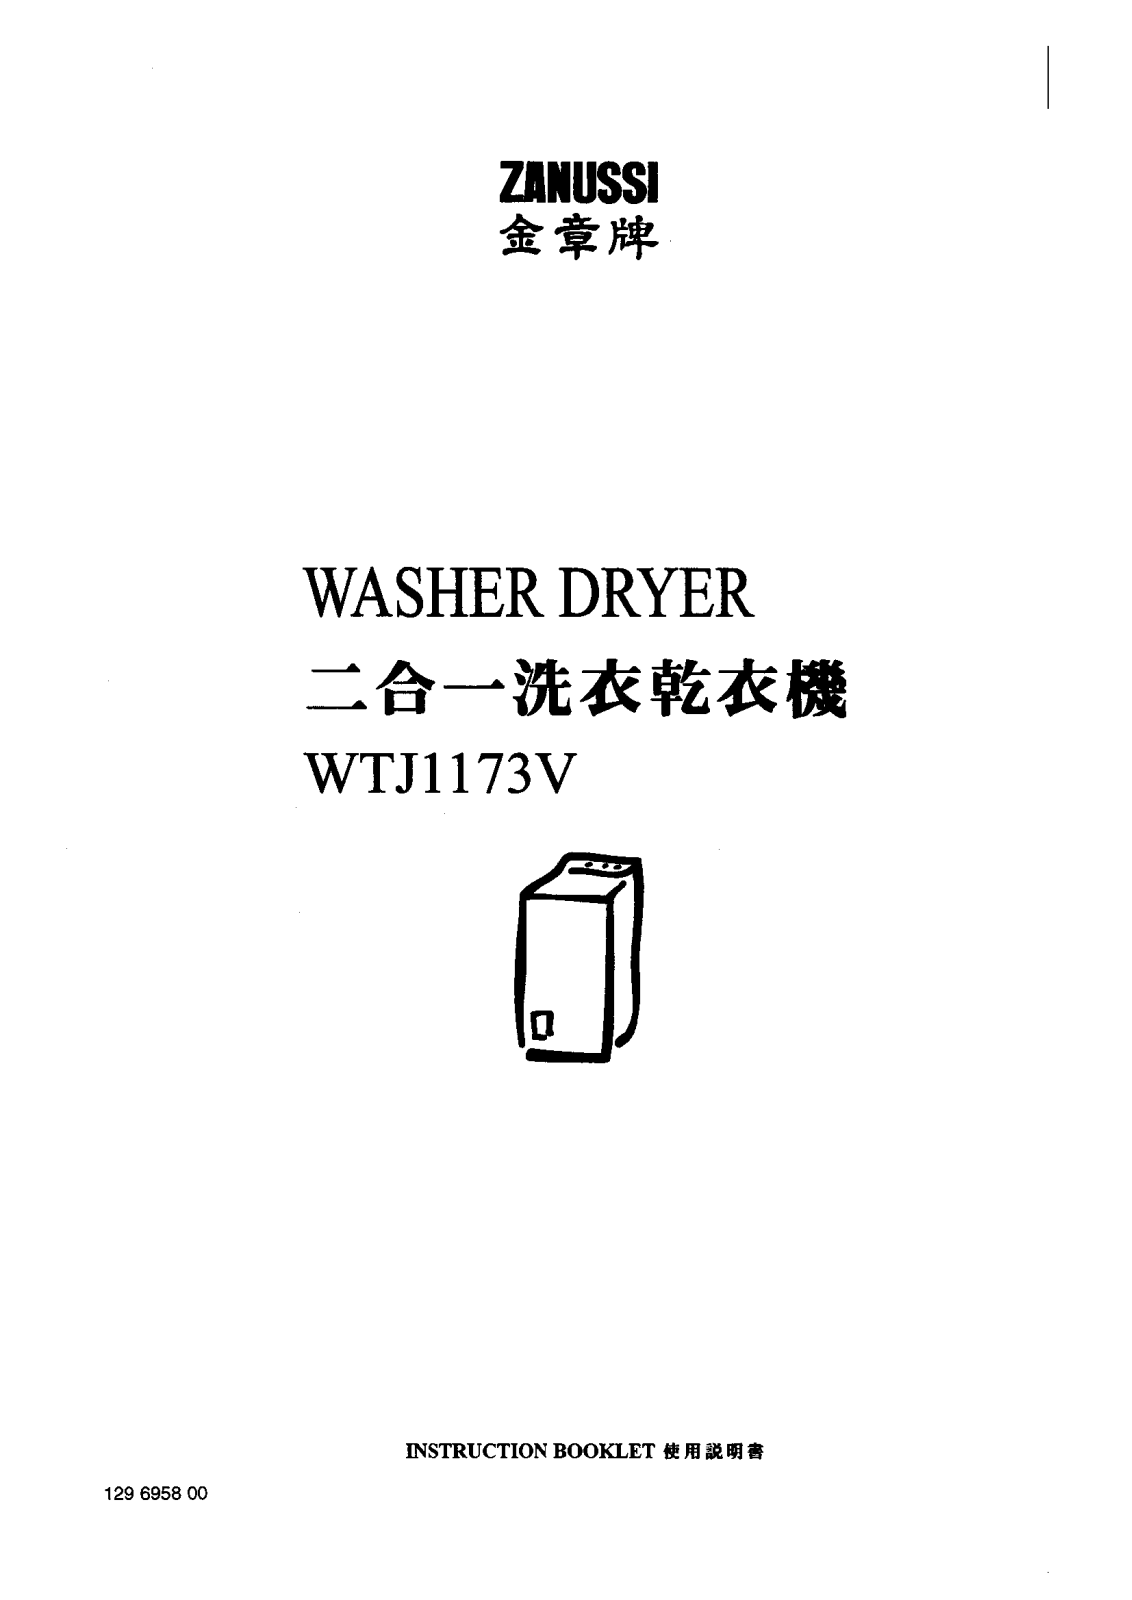 Zanussi WTJ1173V User Manual